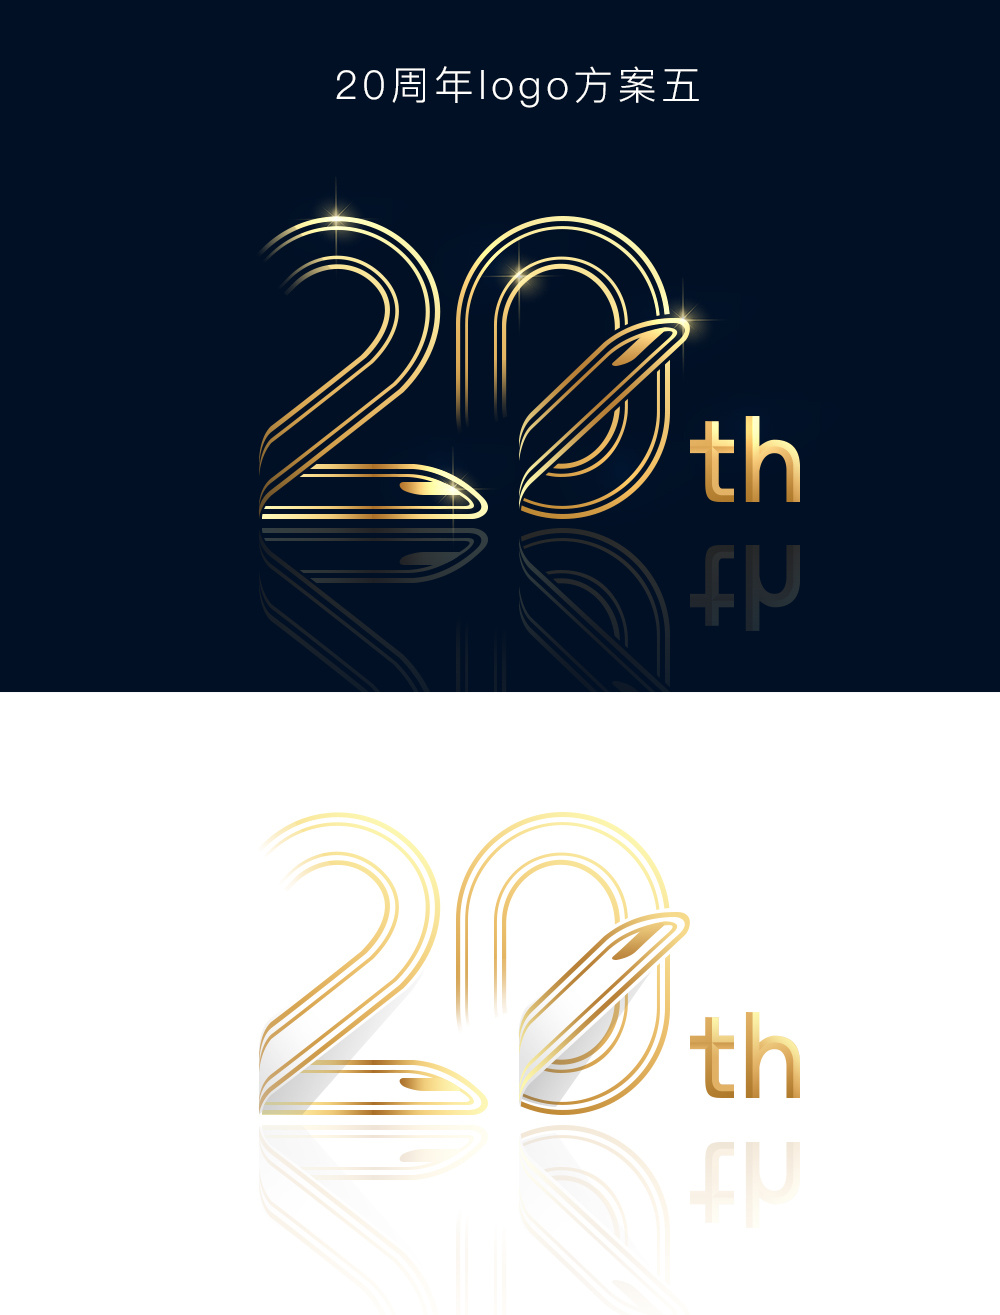 201706 20周年logo